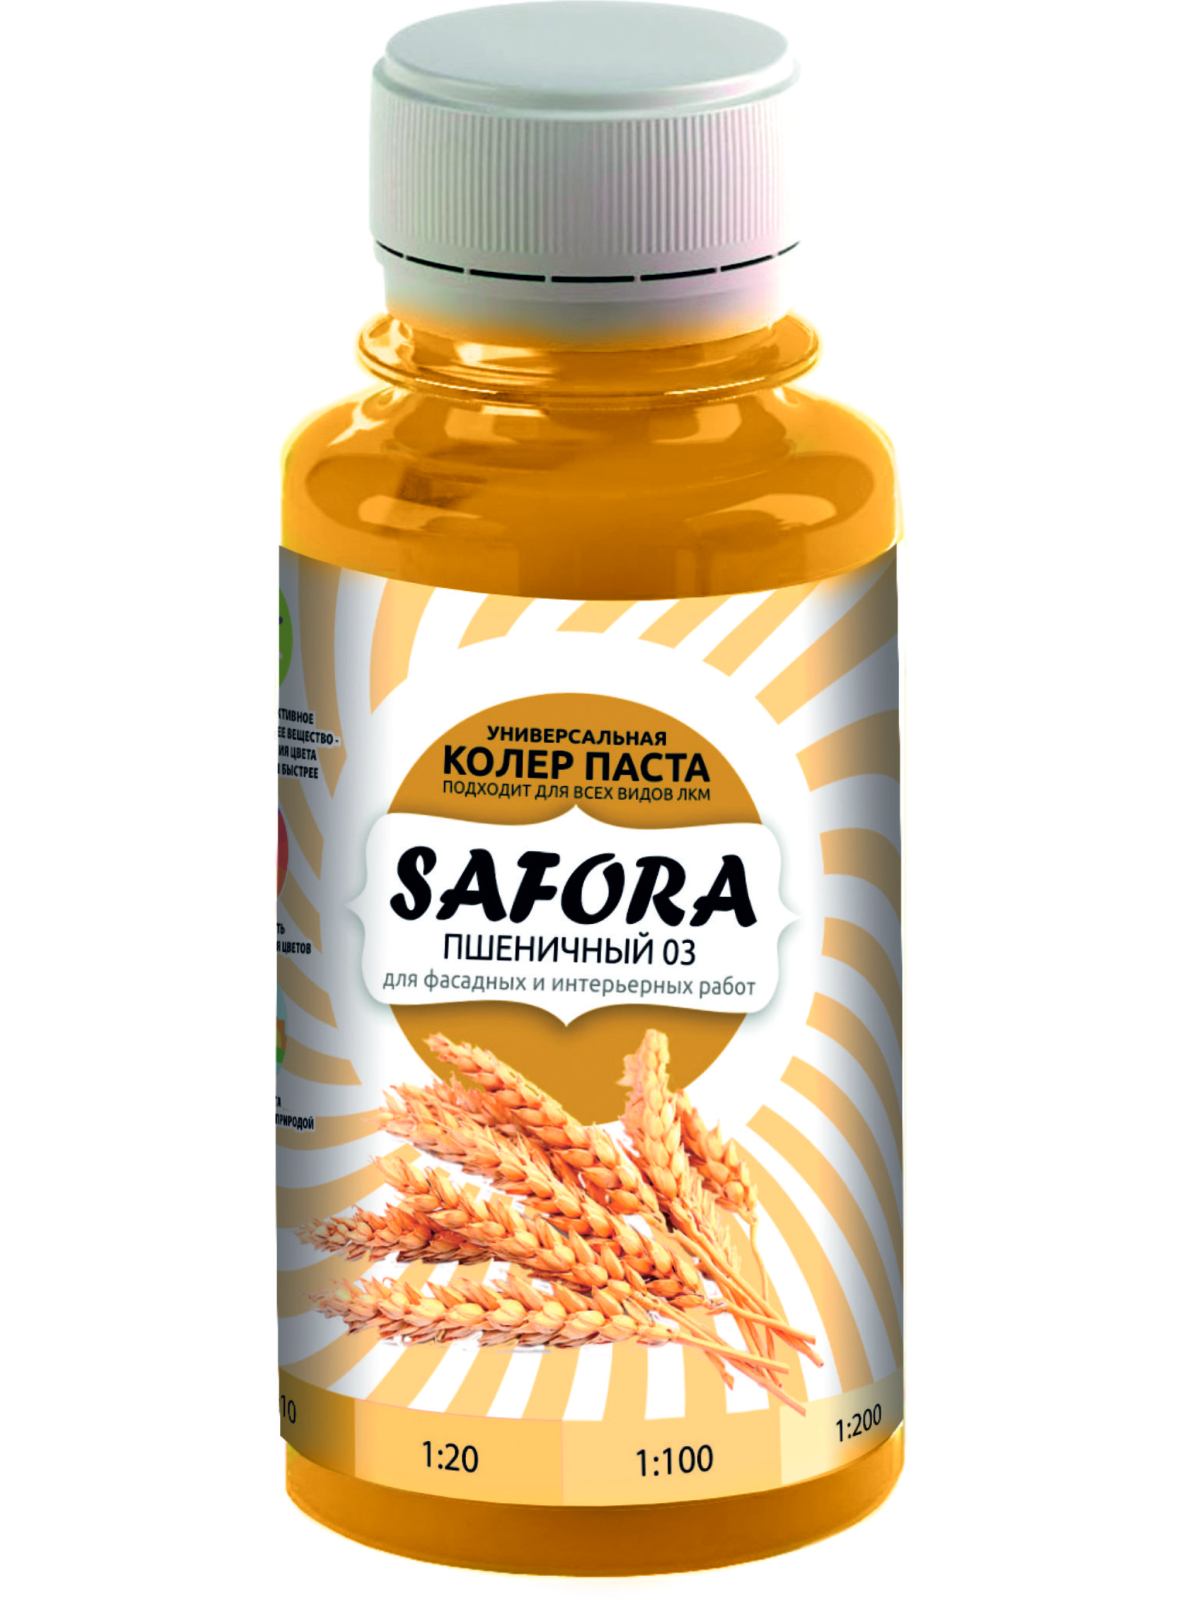 Колеровочная паста SAFORA 03 пшеничный, 100 мл